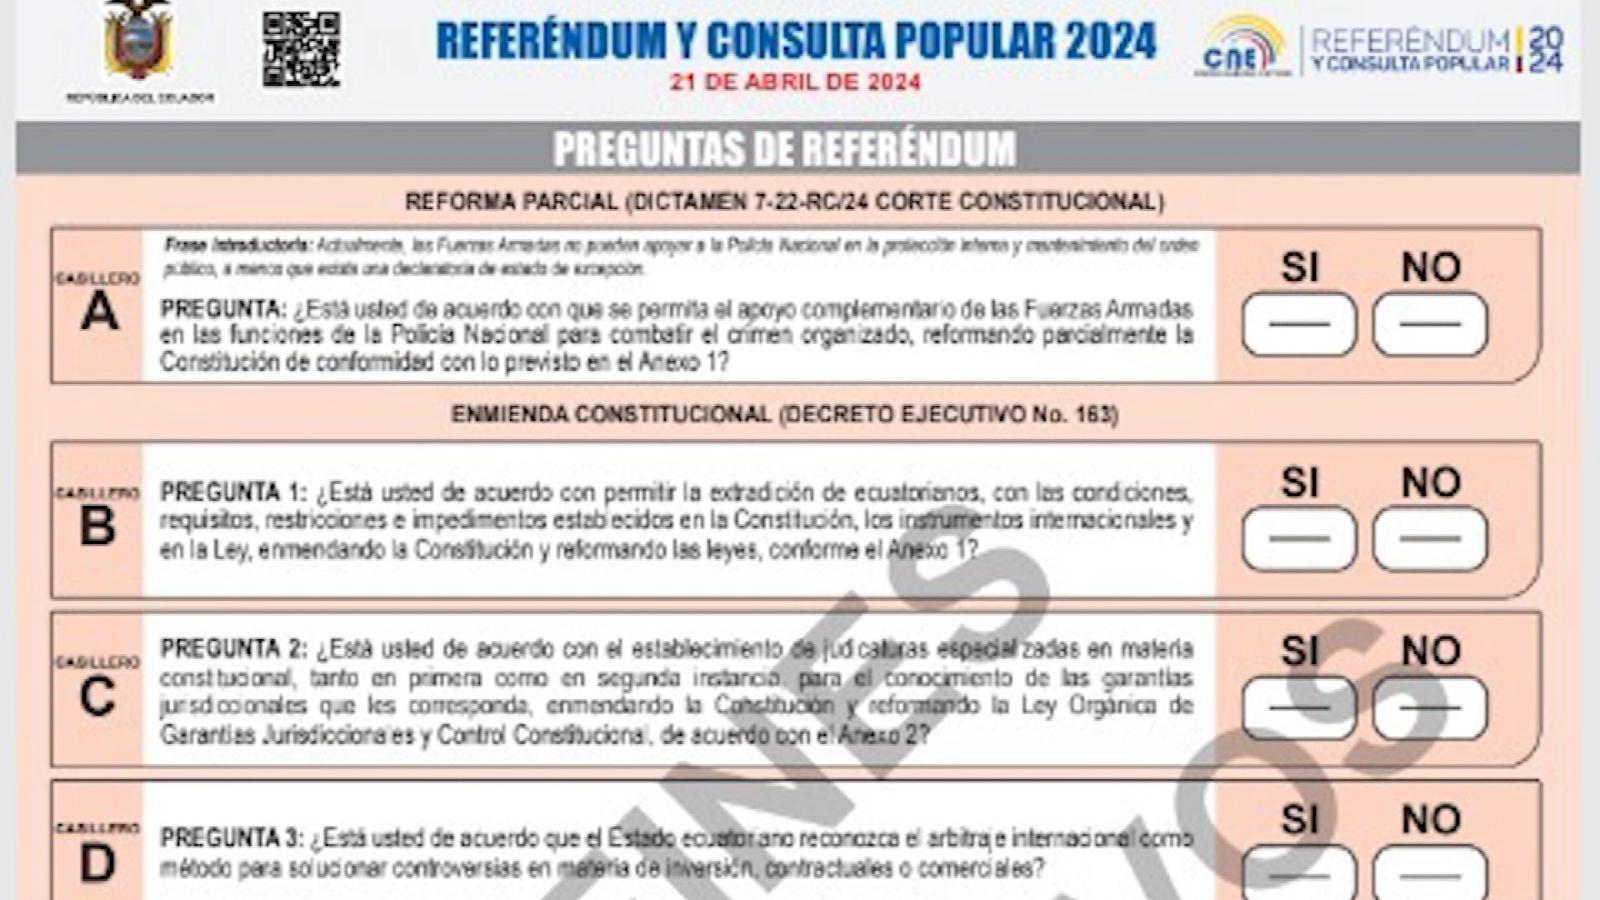 Cuáles son las preguntas del referendo y la consulta popular en Ecuador?